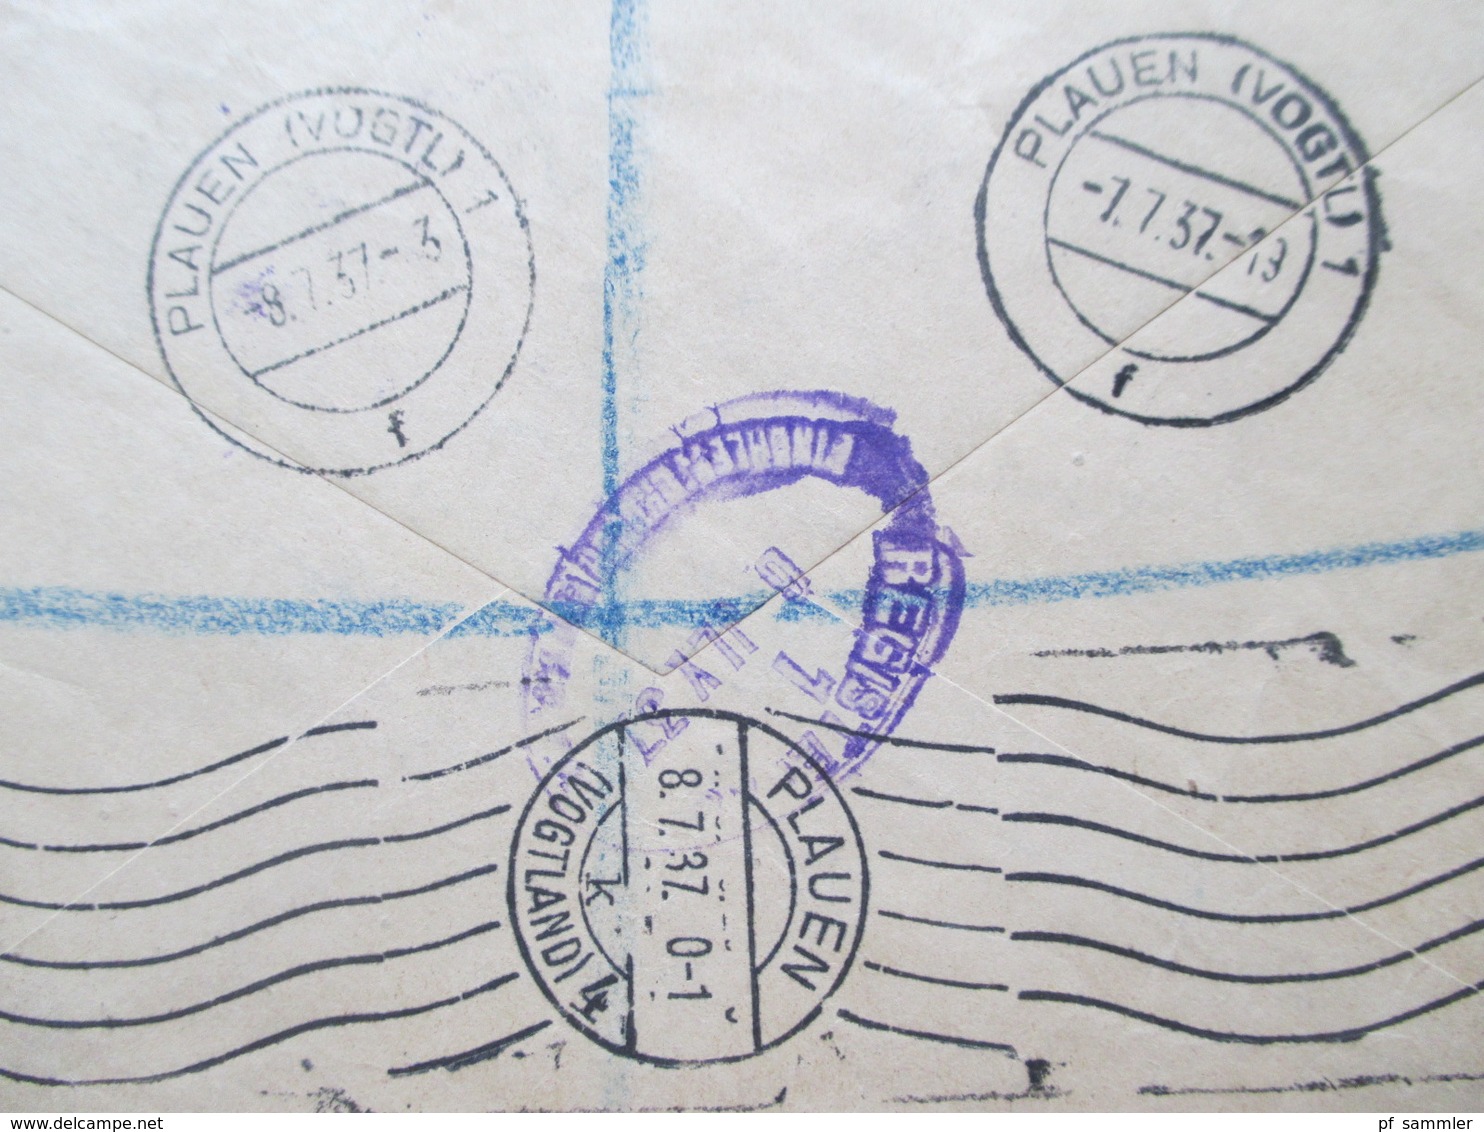 GB 1937 Georg V Nr. 180 / 181 MiF Violetter Registered Stempel Einschreiben Finchley 3 Nach Plauen Rücks. 5 Stempel - Storia Postale